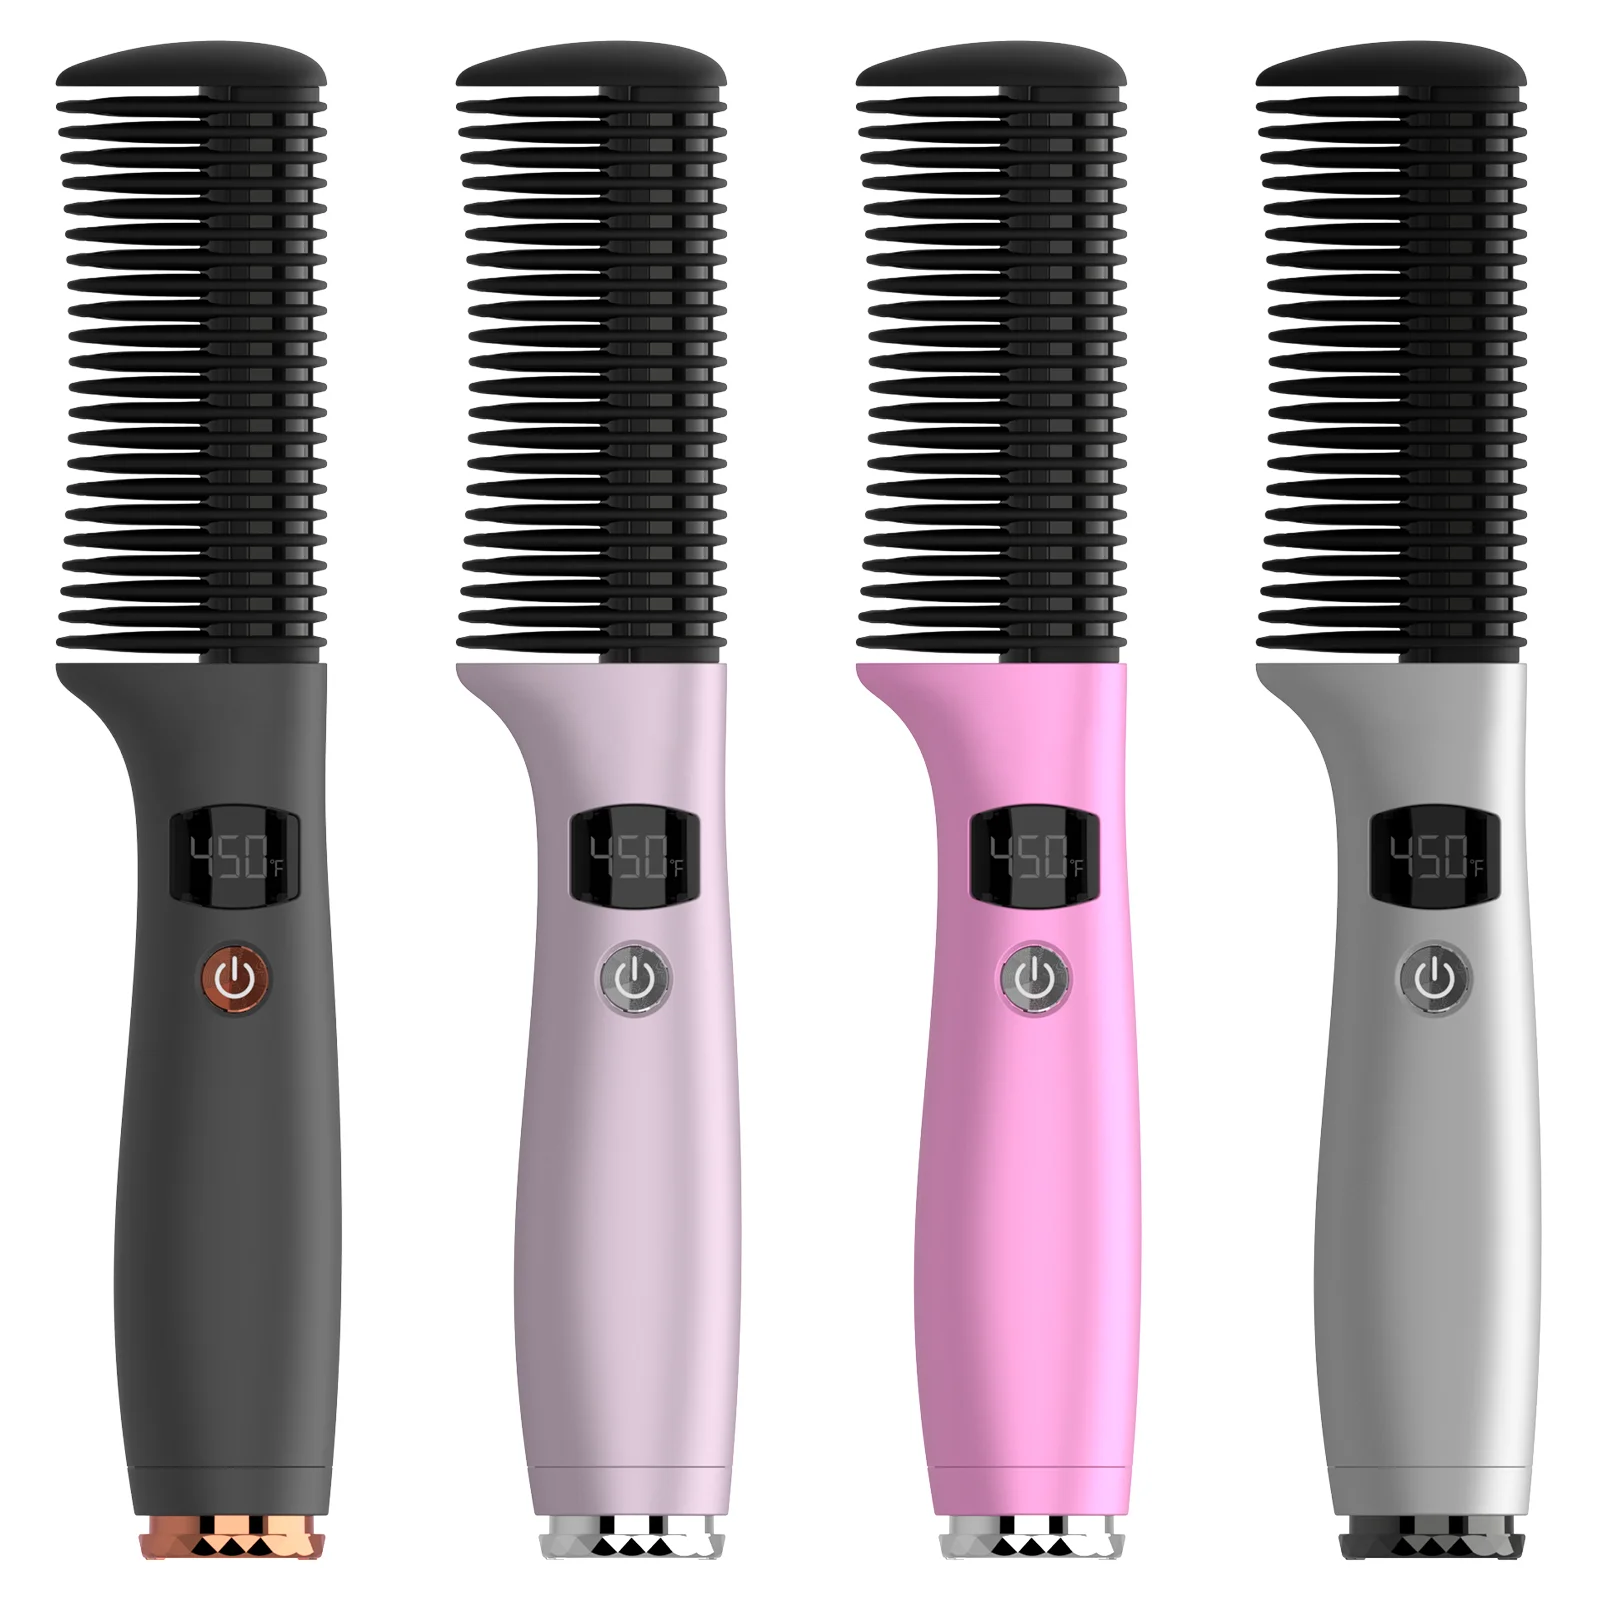 

Vkk Cordless Hair Straightener Brush Hot Comb Straightner Hair Straighteners For Women